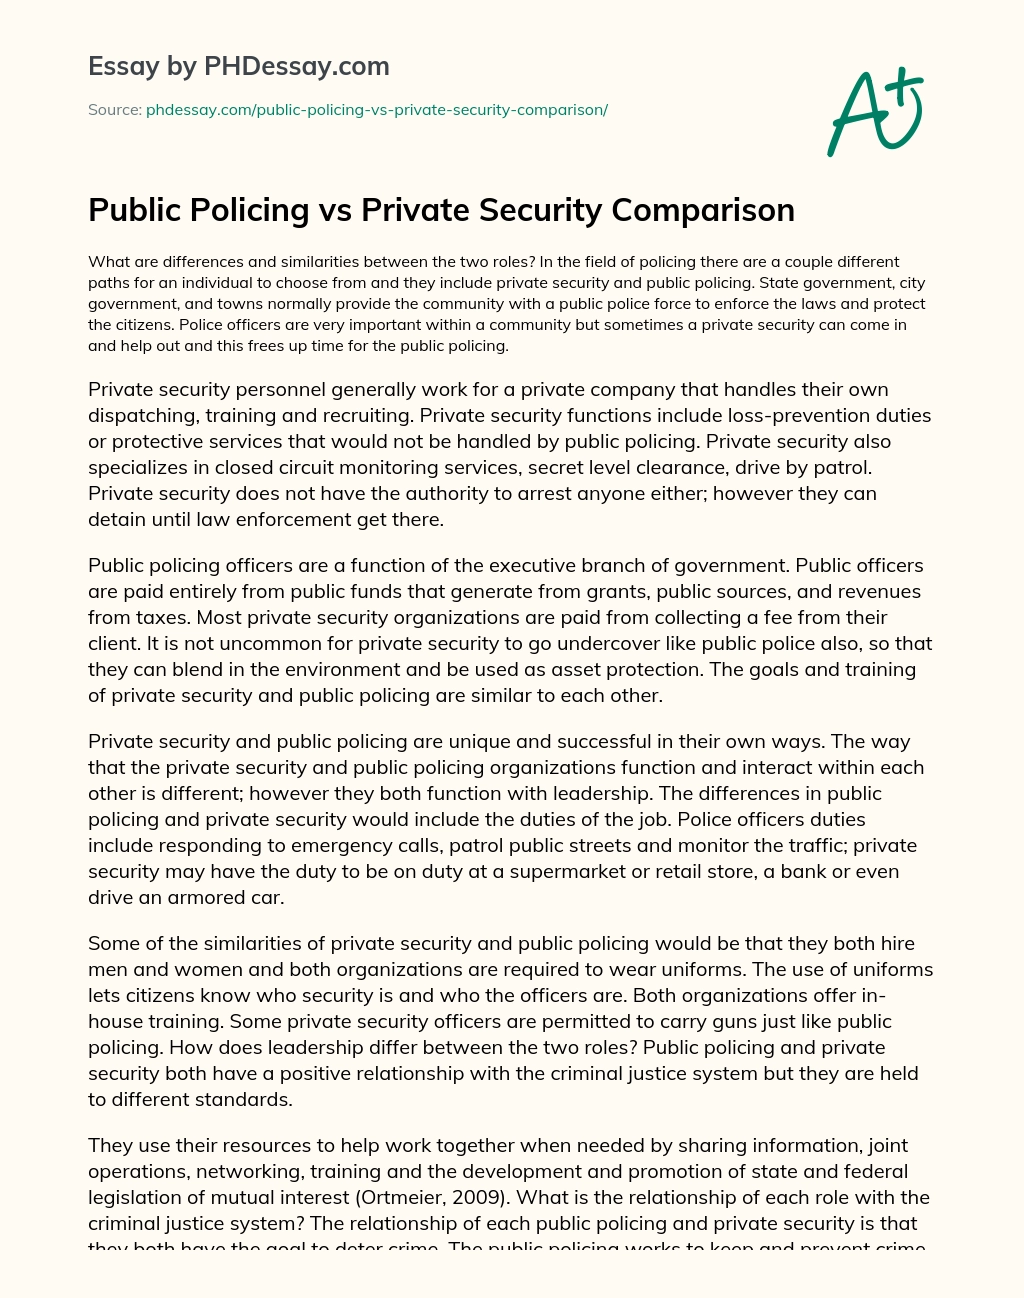 Public Policing vs Private Security Comparison essay